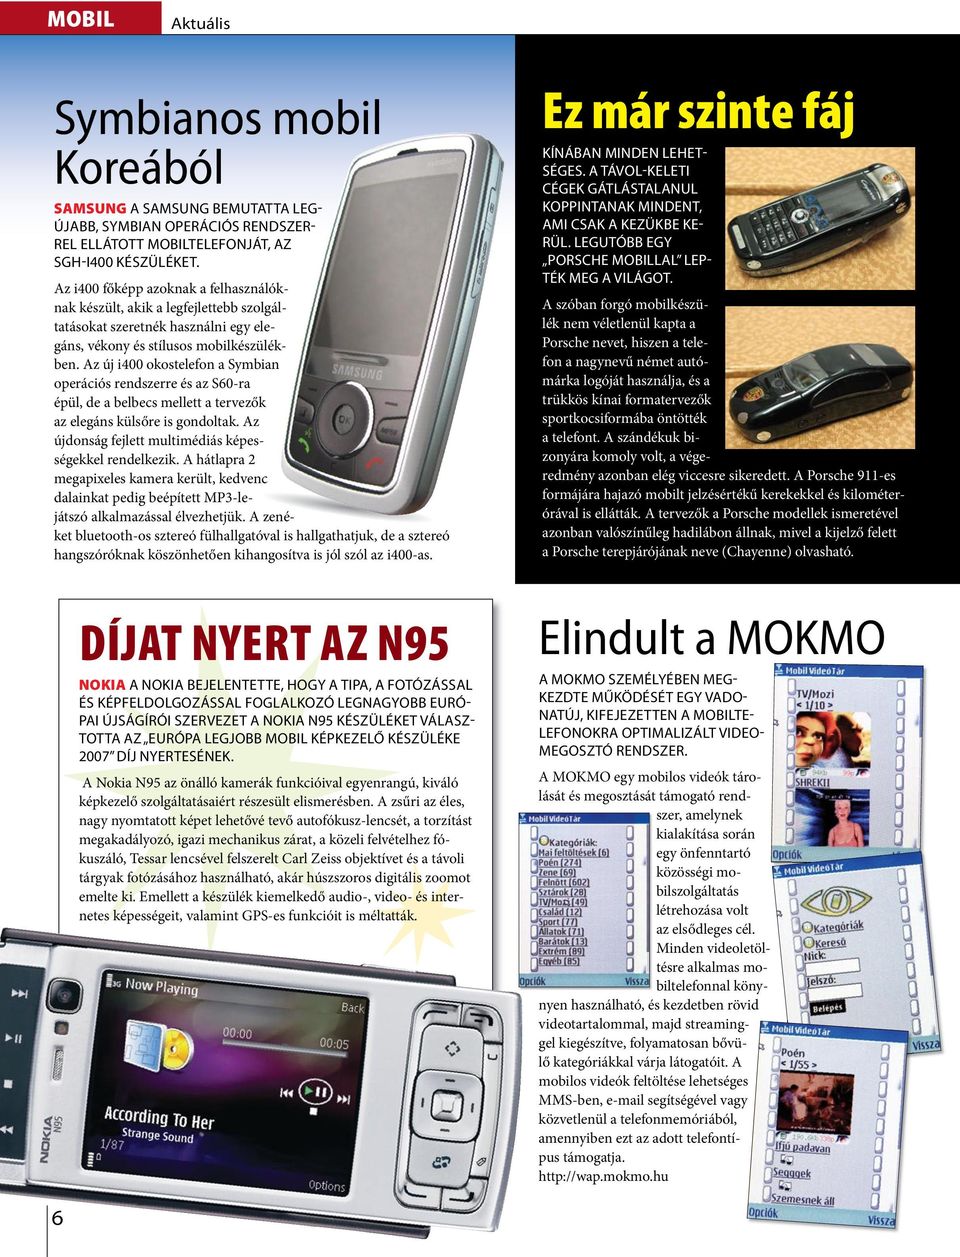 Az új i400 okosteefon a Symbian operációs rendszerre és az S60-ra épü, de a bebecs meett a tervezők az eegáns küsőre is gondotak. Az újdonság fejett mutimédiás képességekke rendekezik.